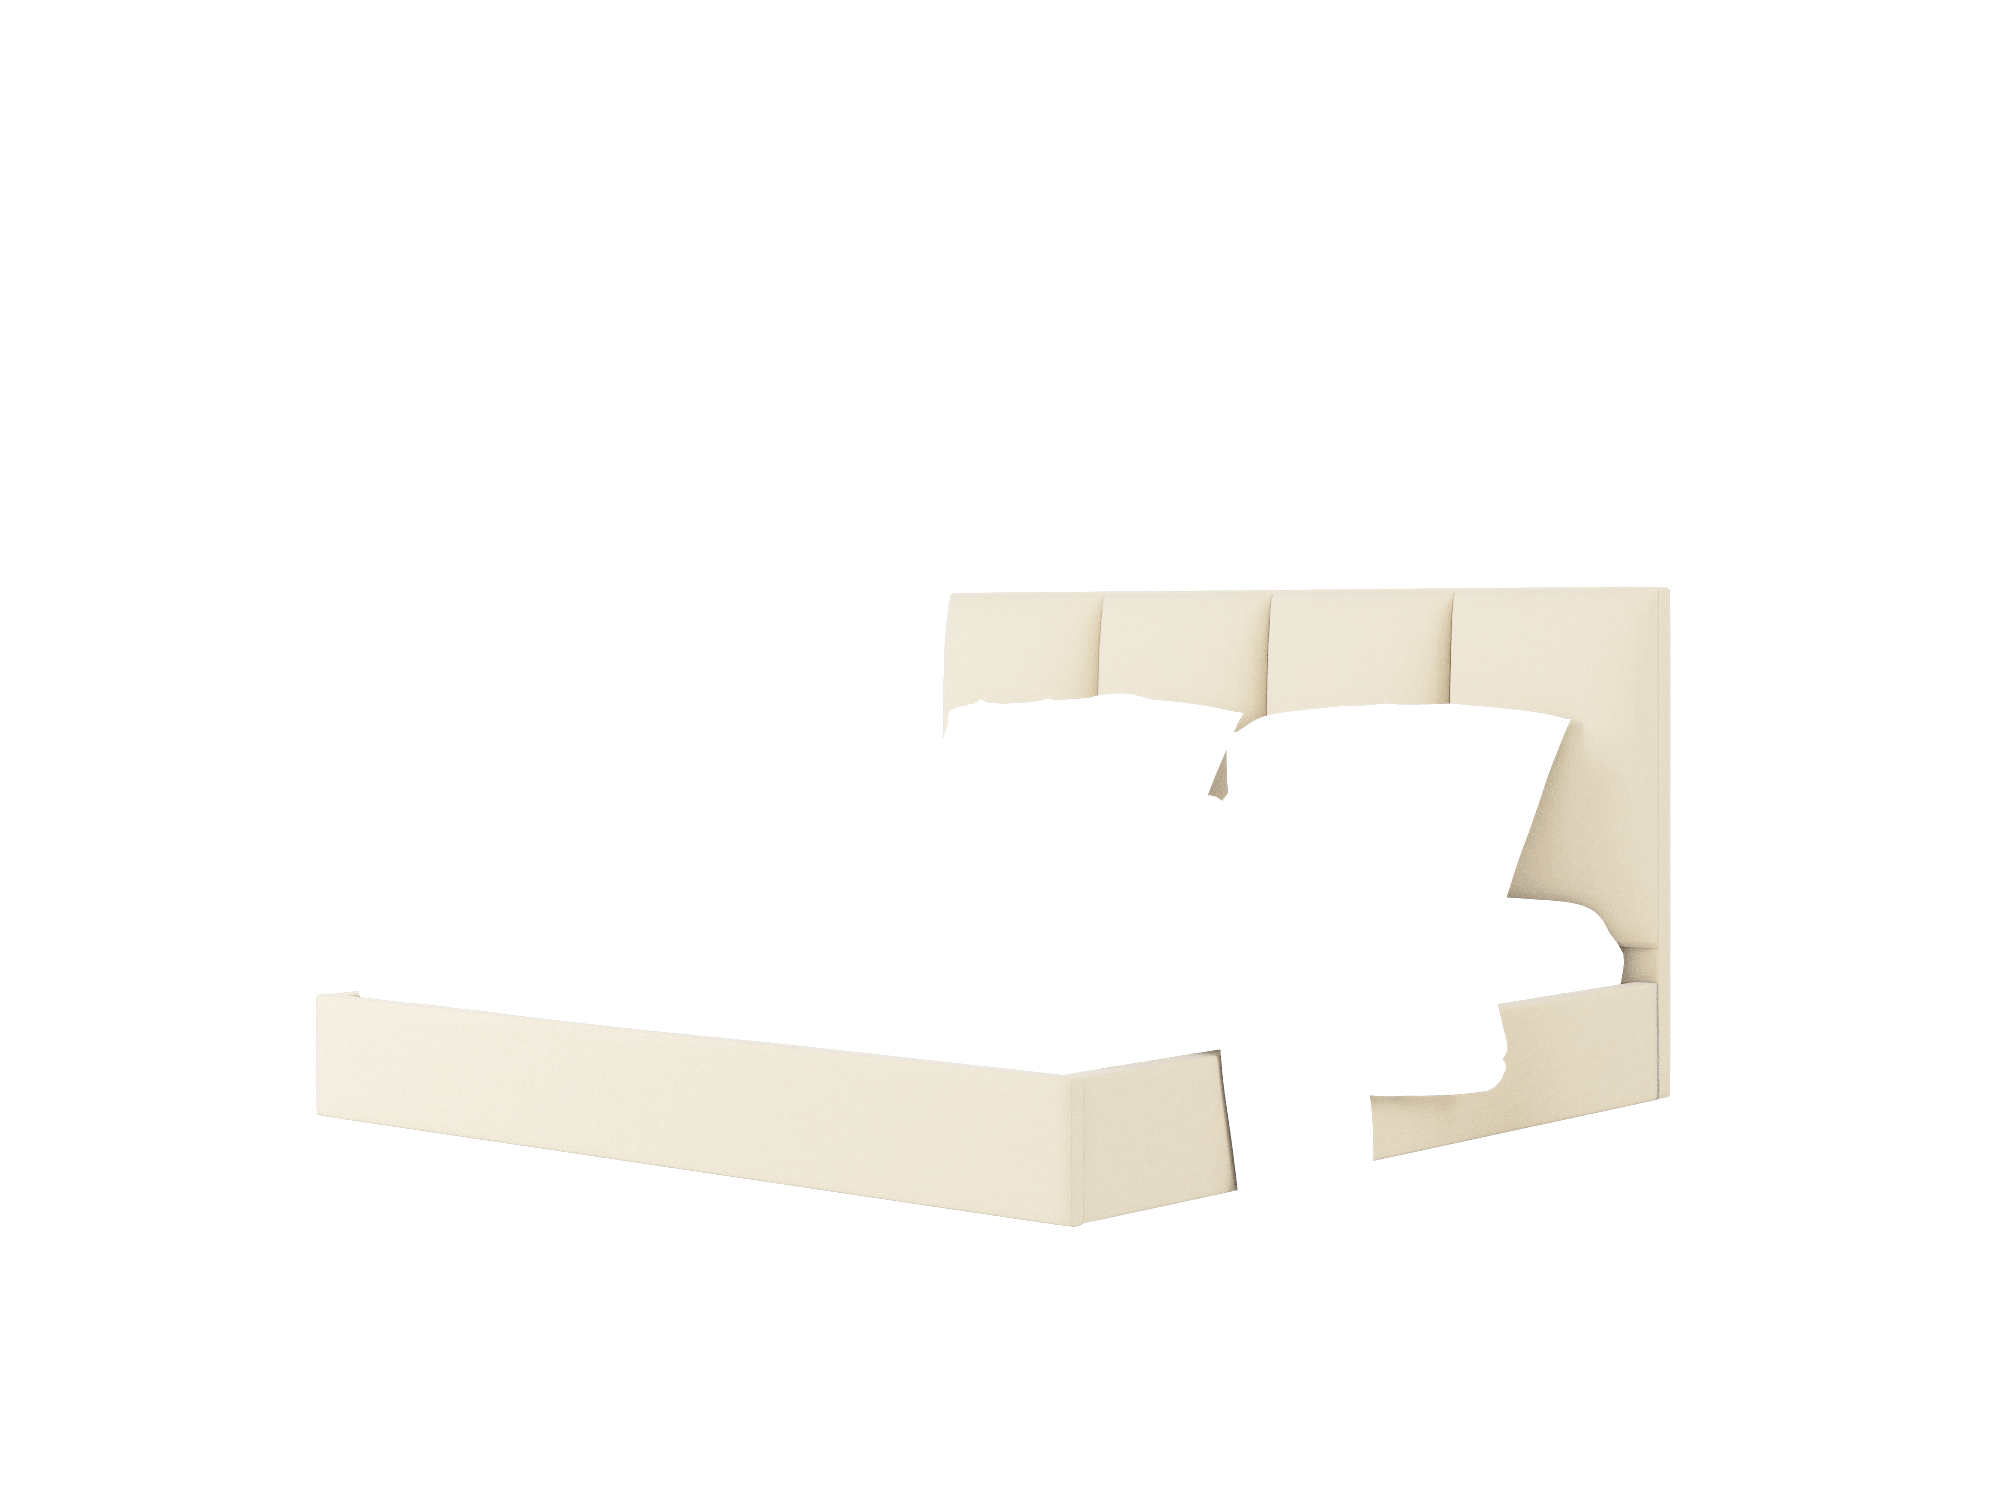 Celine Rocket Sand Bed King Room Texture